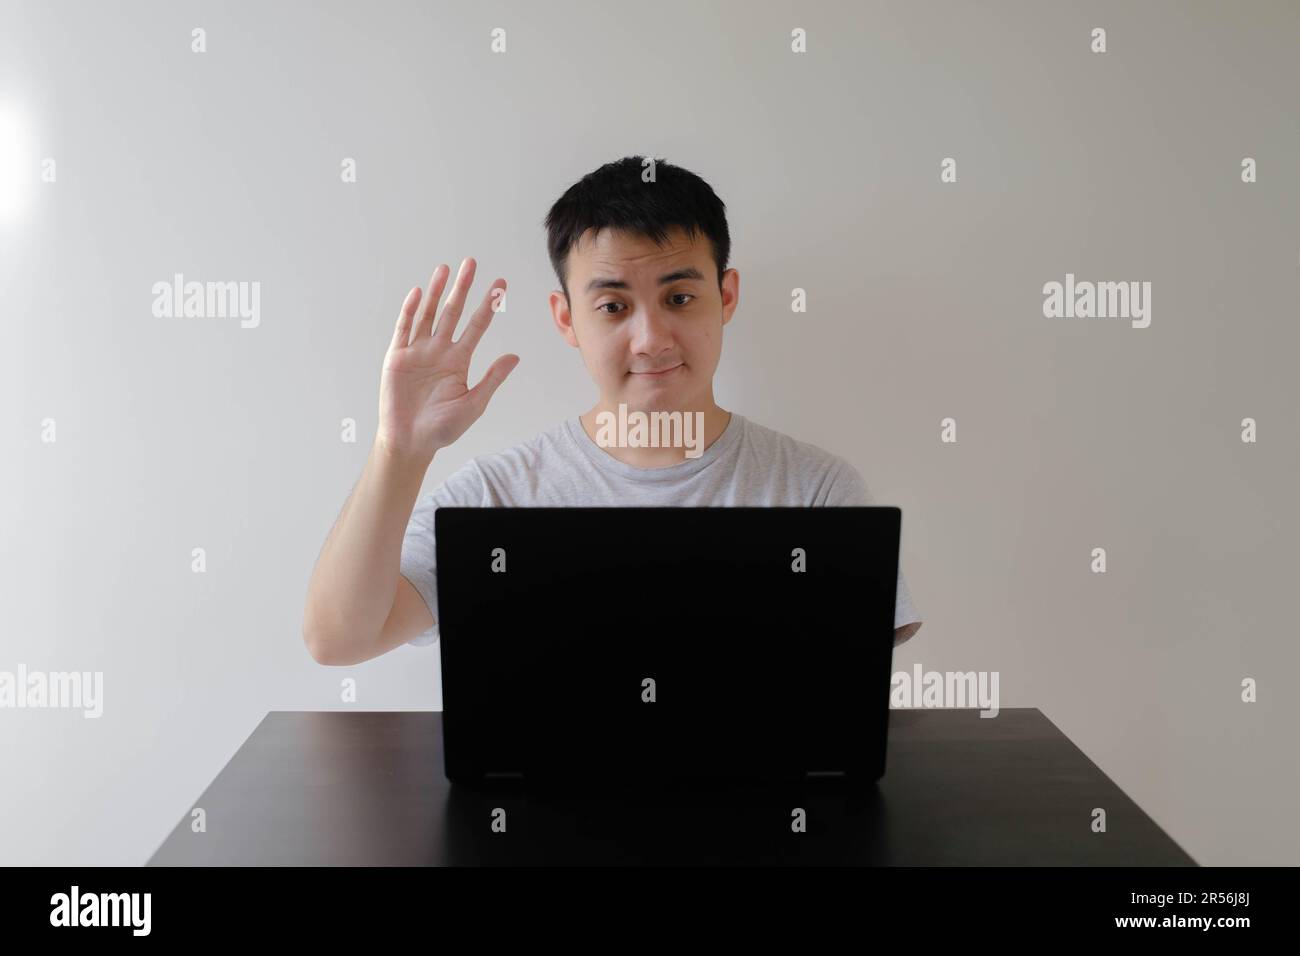 Ein junger asiatischer Mann, der ein graues T-Shirt trägt, winkt mit der Hand zu einem Online-Meeting auf dem Laptop auf einem Holztisch. Isolierter weißer Hintergrund. Stockfoto